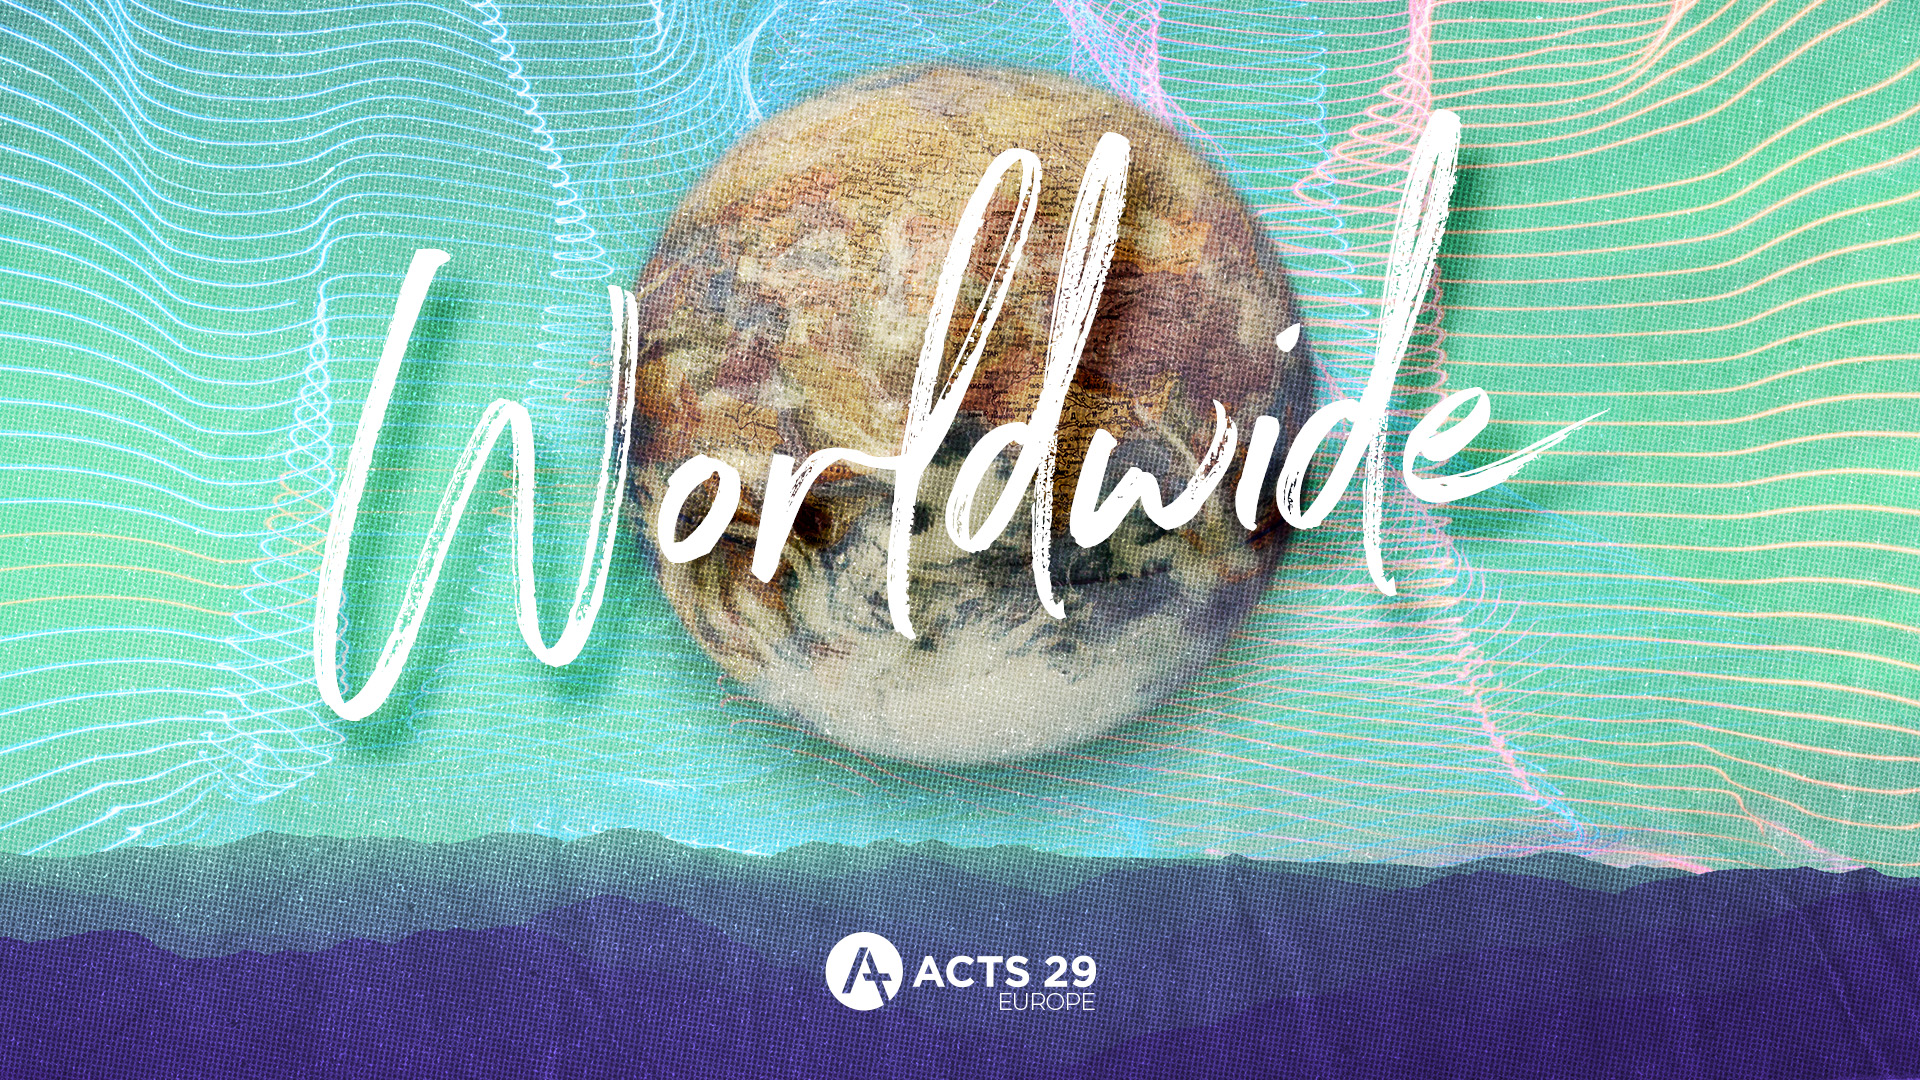 Tony Merida – Worldwide (Colossians 1:1-23)